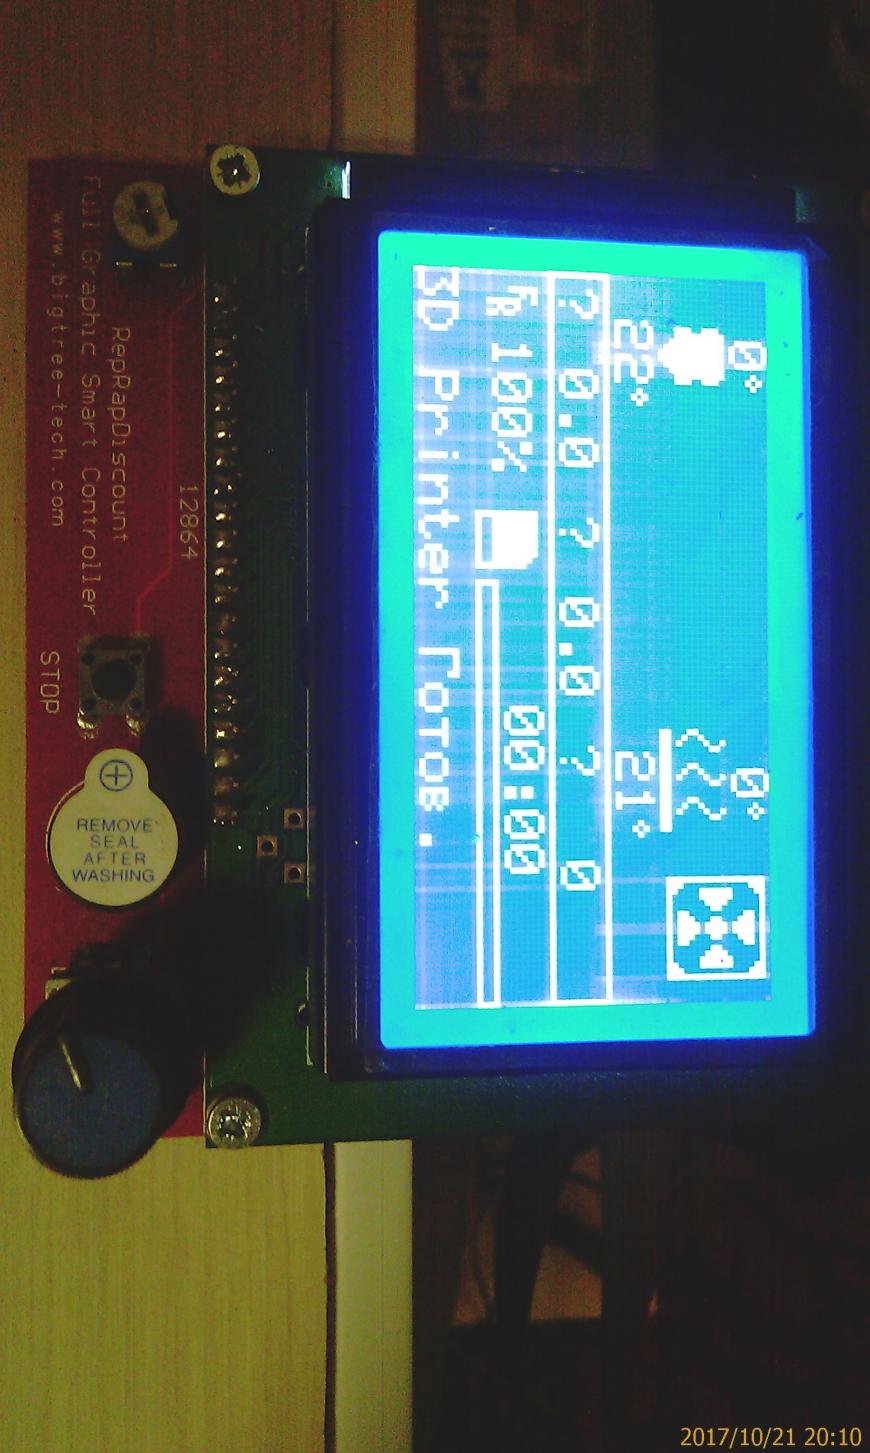 LCD 12864 + RAMPS проблема с контрастностью при питании от БП